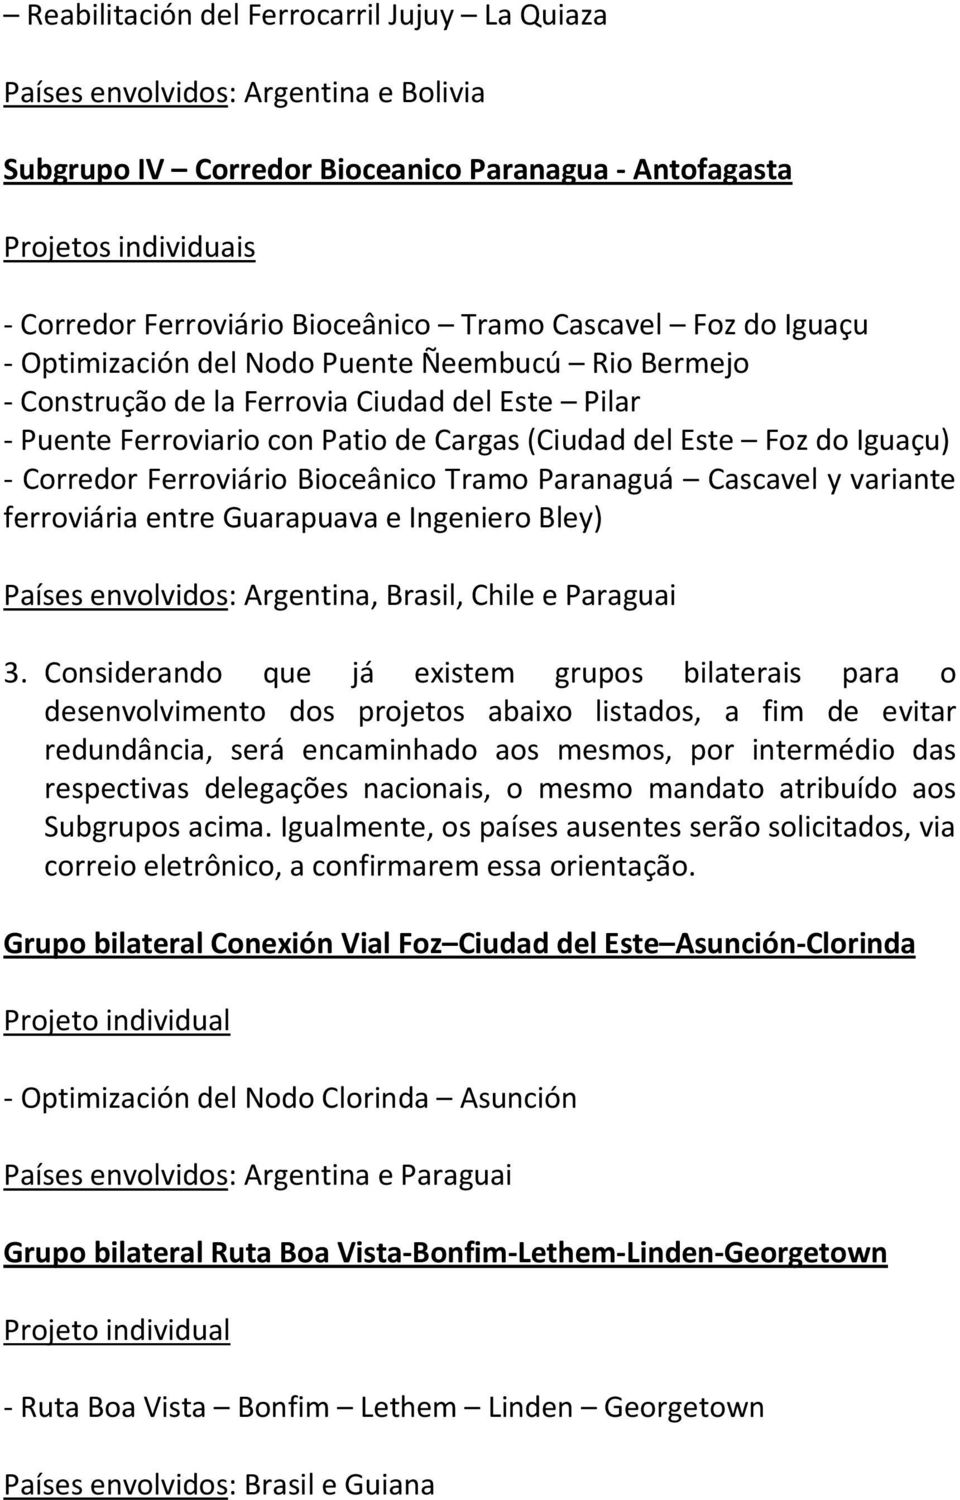 Iguaçu) - Corredor Ferroviário Bioceânico Tramo Paranaguá Cascavel y variante ferroviária entre Guarapuava e Ingeniero Bley) Países envolvidos: Argentina, Brasil, Chile e Paraguai 3.